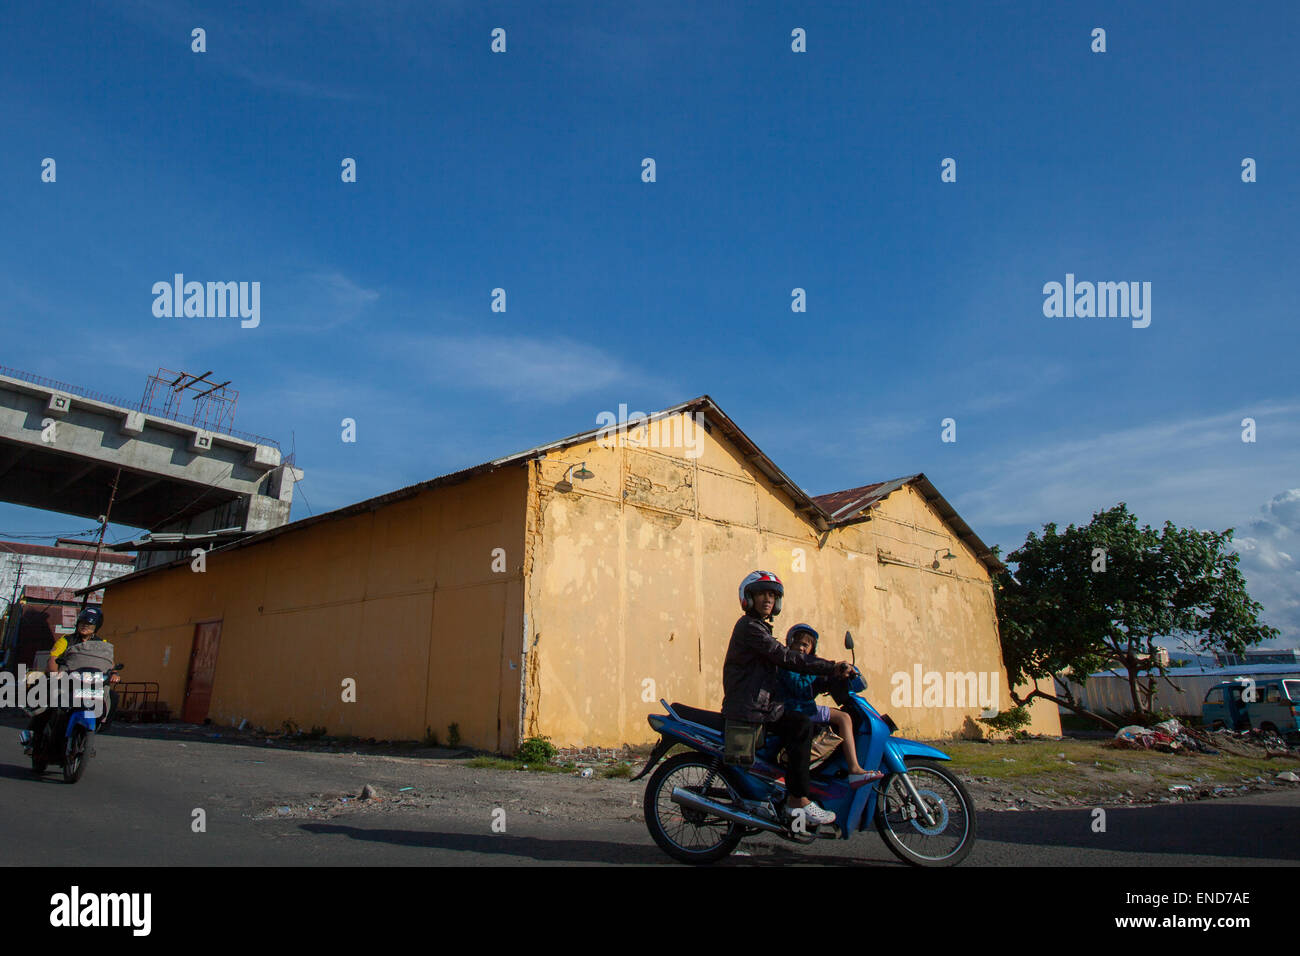 Gli automobilisti sono fotografati sullo sfondo di un edificio di magazzino, nella zona costiera di Manado, Sulawesi settentrionale, Indonesia. Foto Stock